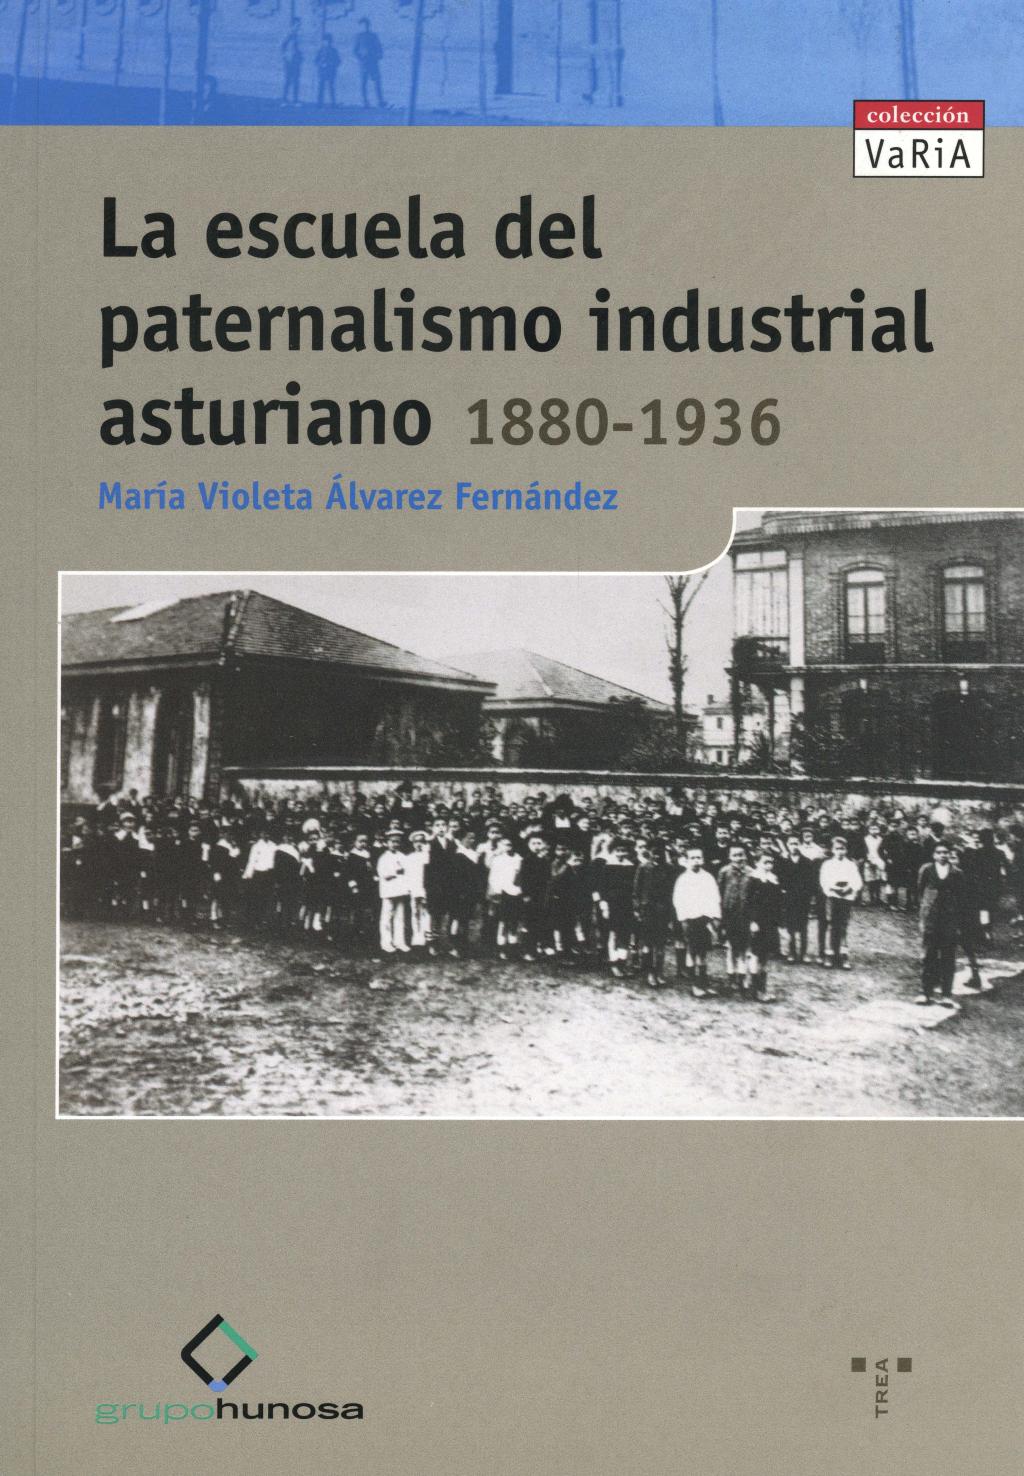 Libros La escuela del paternalismo industrial asturiano Archivo Histórico Hunosa Pozo Fondón